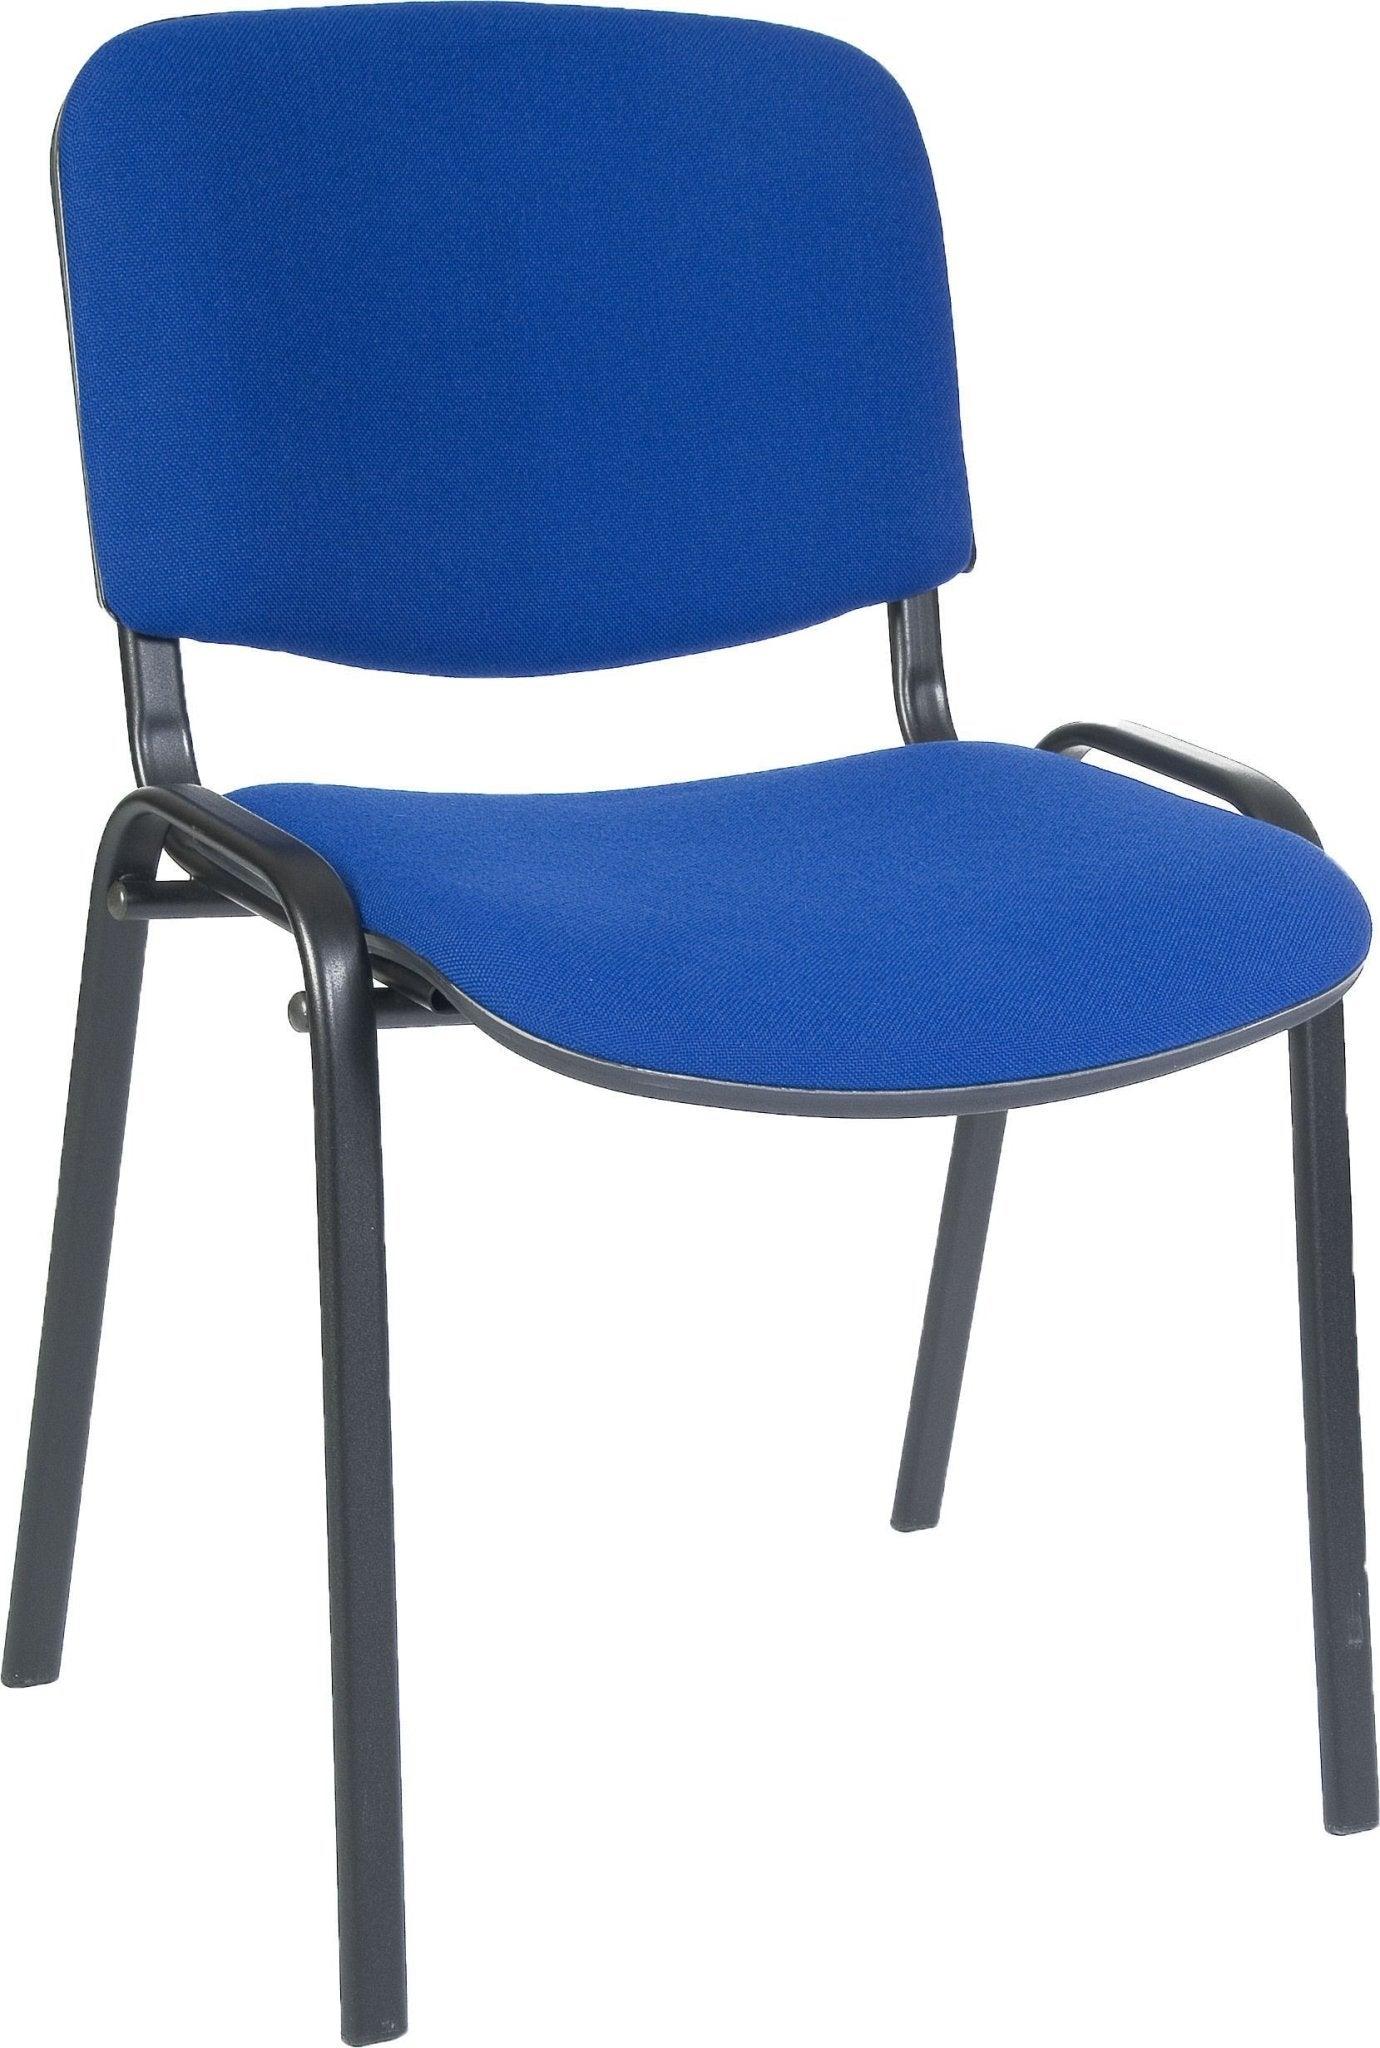 Conference room chair (blue) - crimblefest furniture - image 1